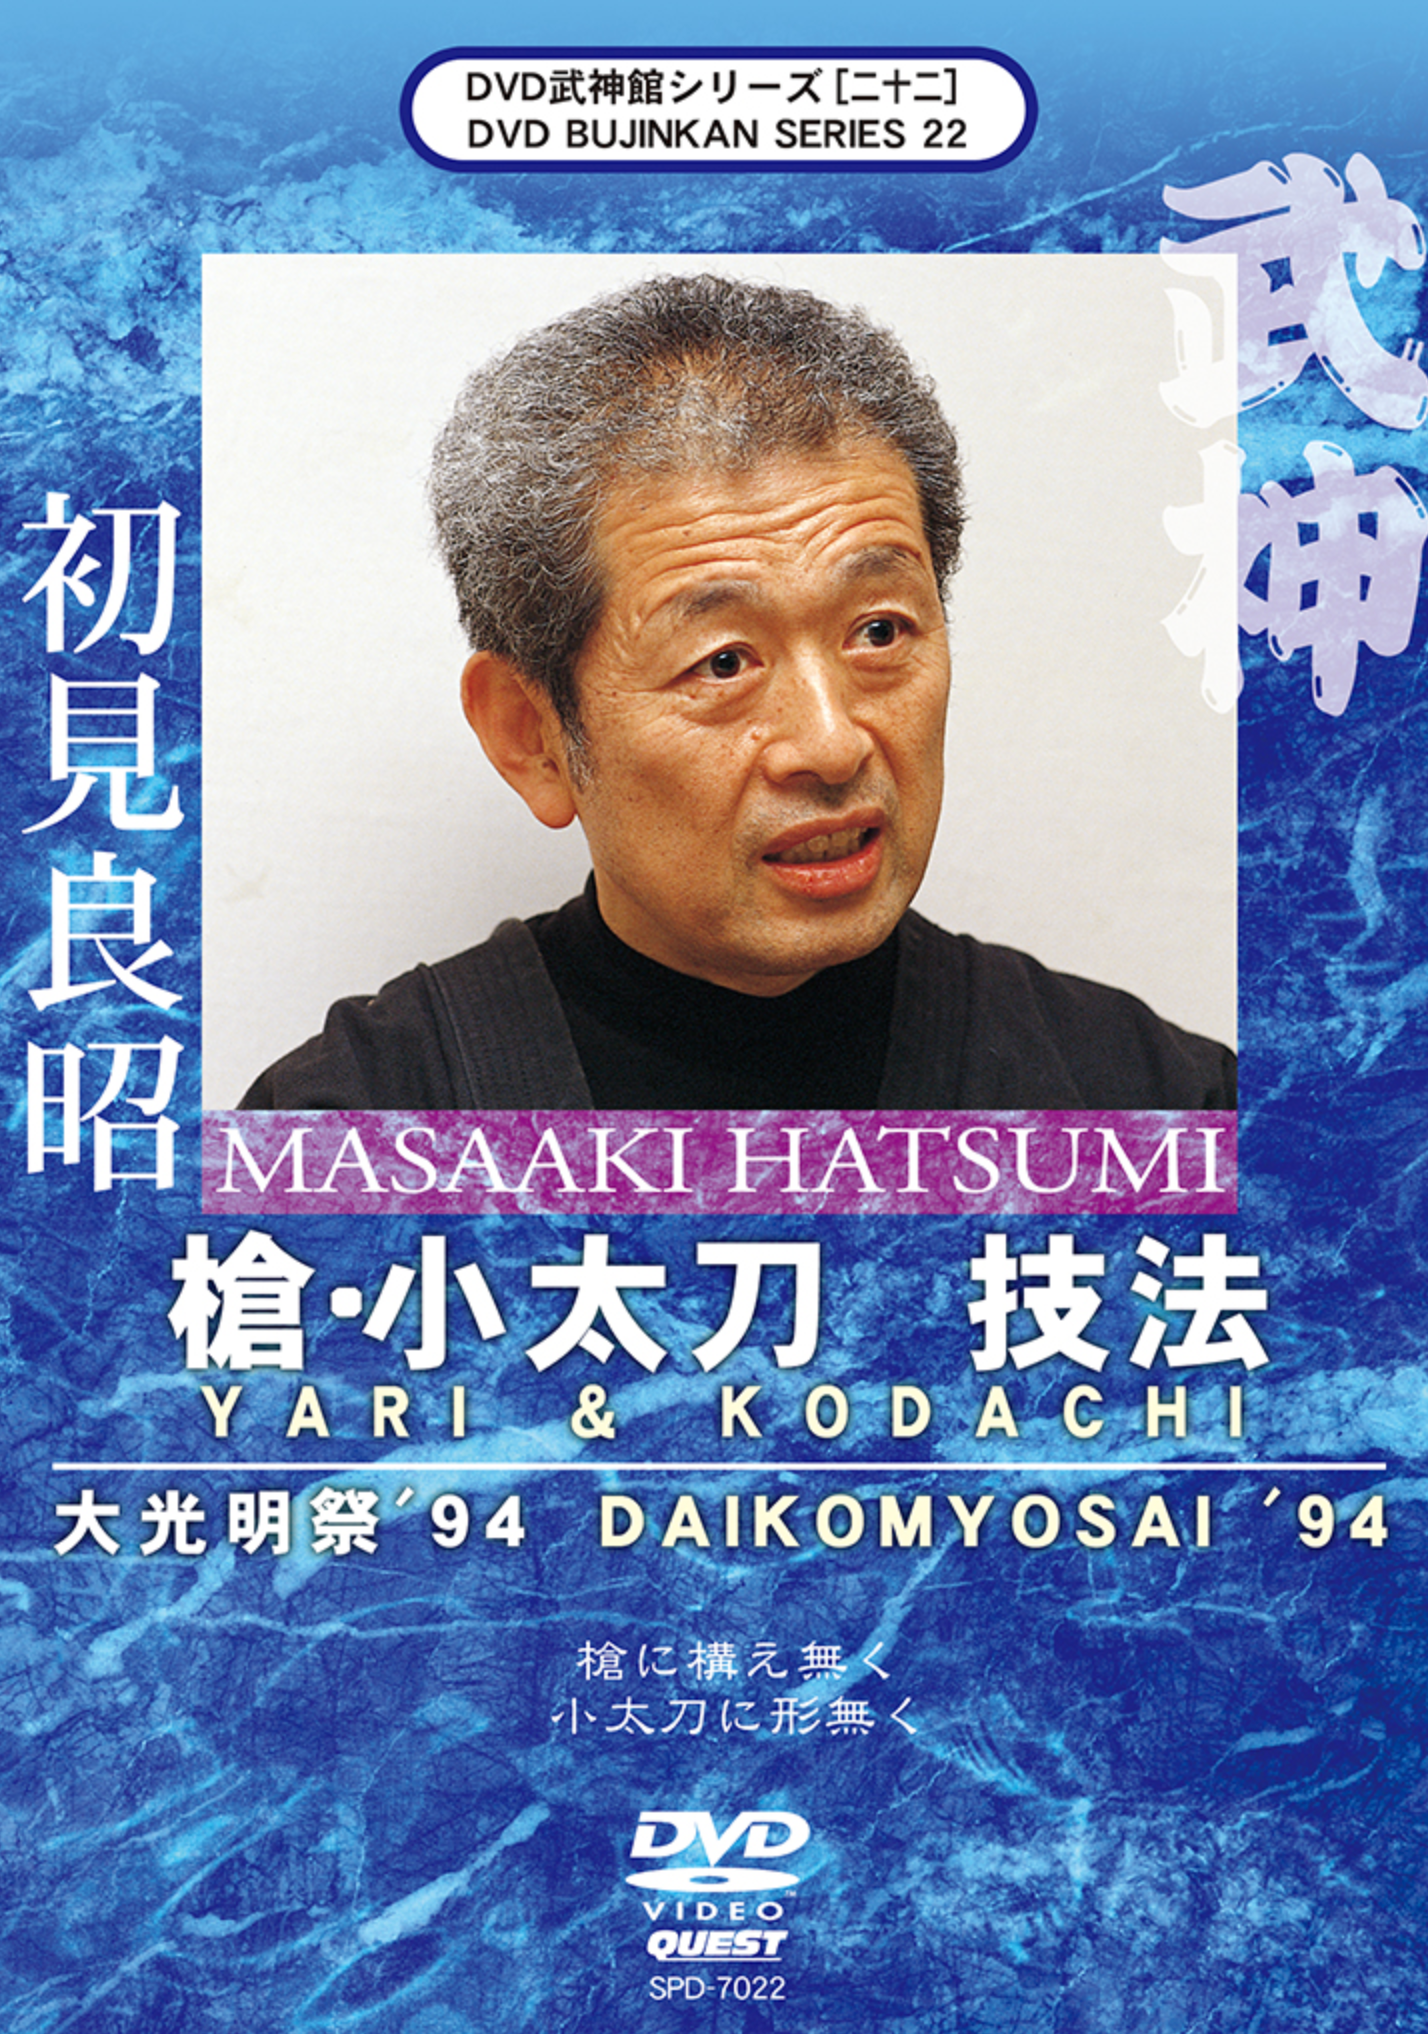 Bujinkan DVD Series 22: Yari & Kodachi with Masaaki Hatsumi - Budovideos Inc